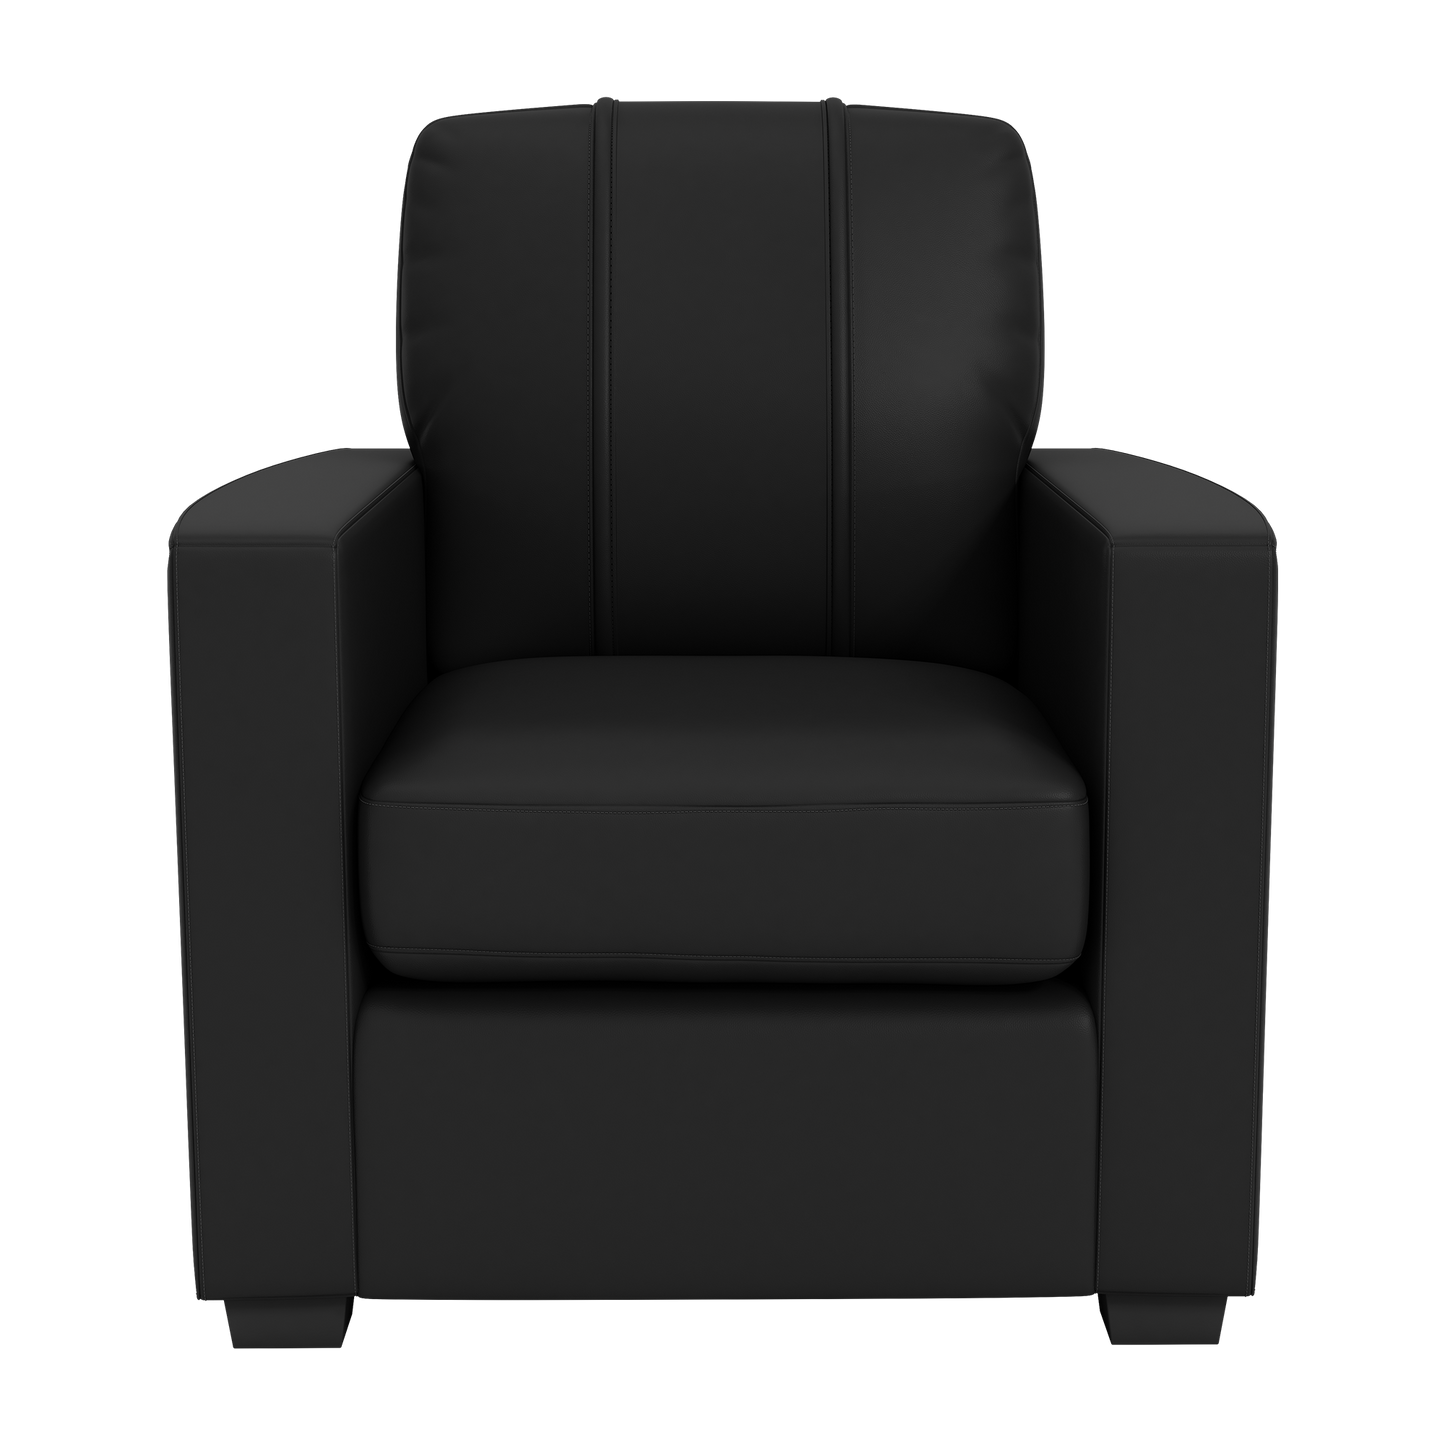 Silver Club Chair with LA Galaxy Alternate Logo